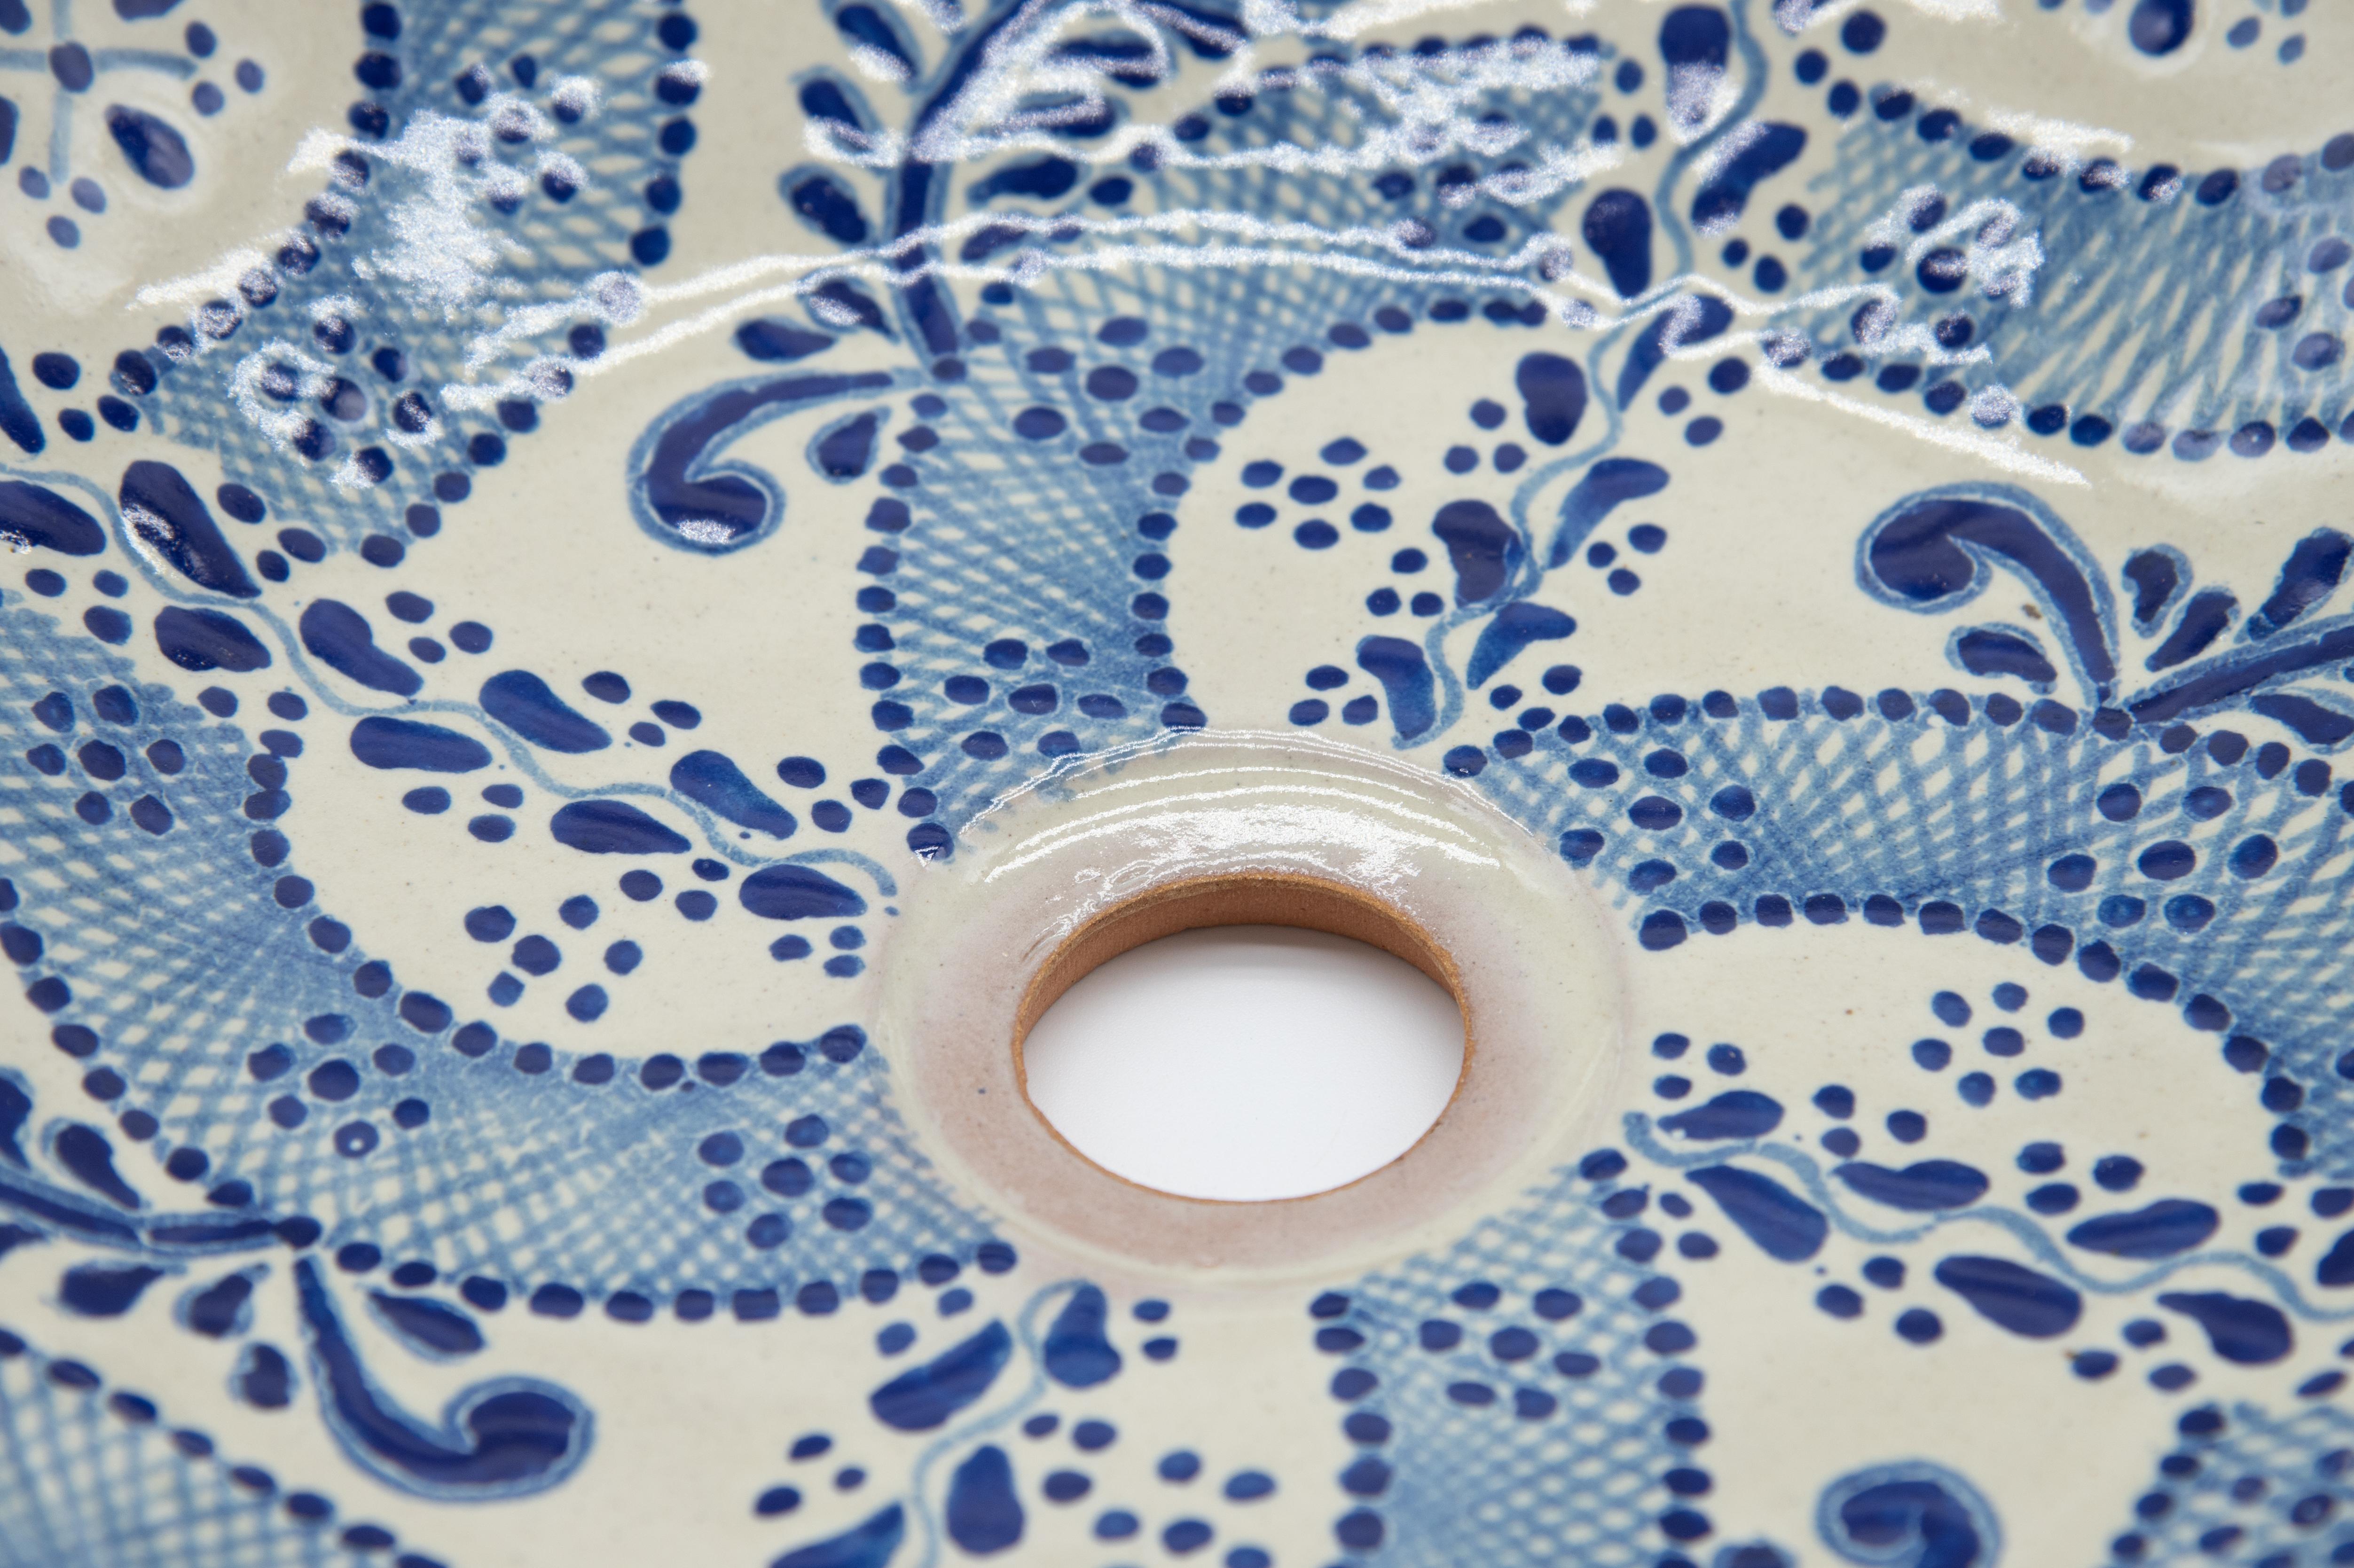 Elegant lavabo blanc et bleu réalisé avec la technique Talavera. L'artiste Cesar Torres dresse le portrait de l'art colonial du Mexique. 

La Talavera n'est pas une simple céramique peinte : sa décoration exquise est le fruit d'un délicat processus